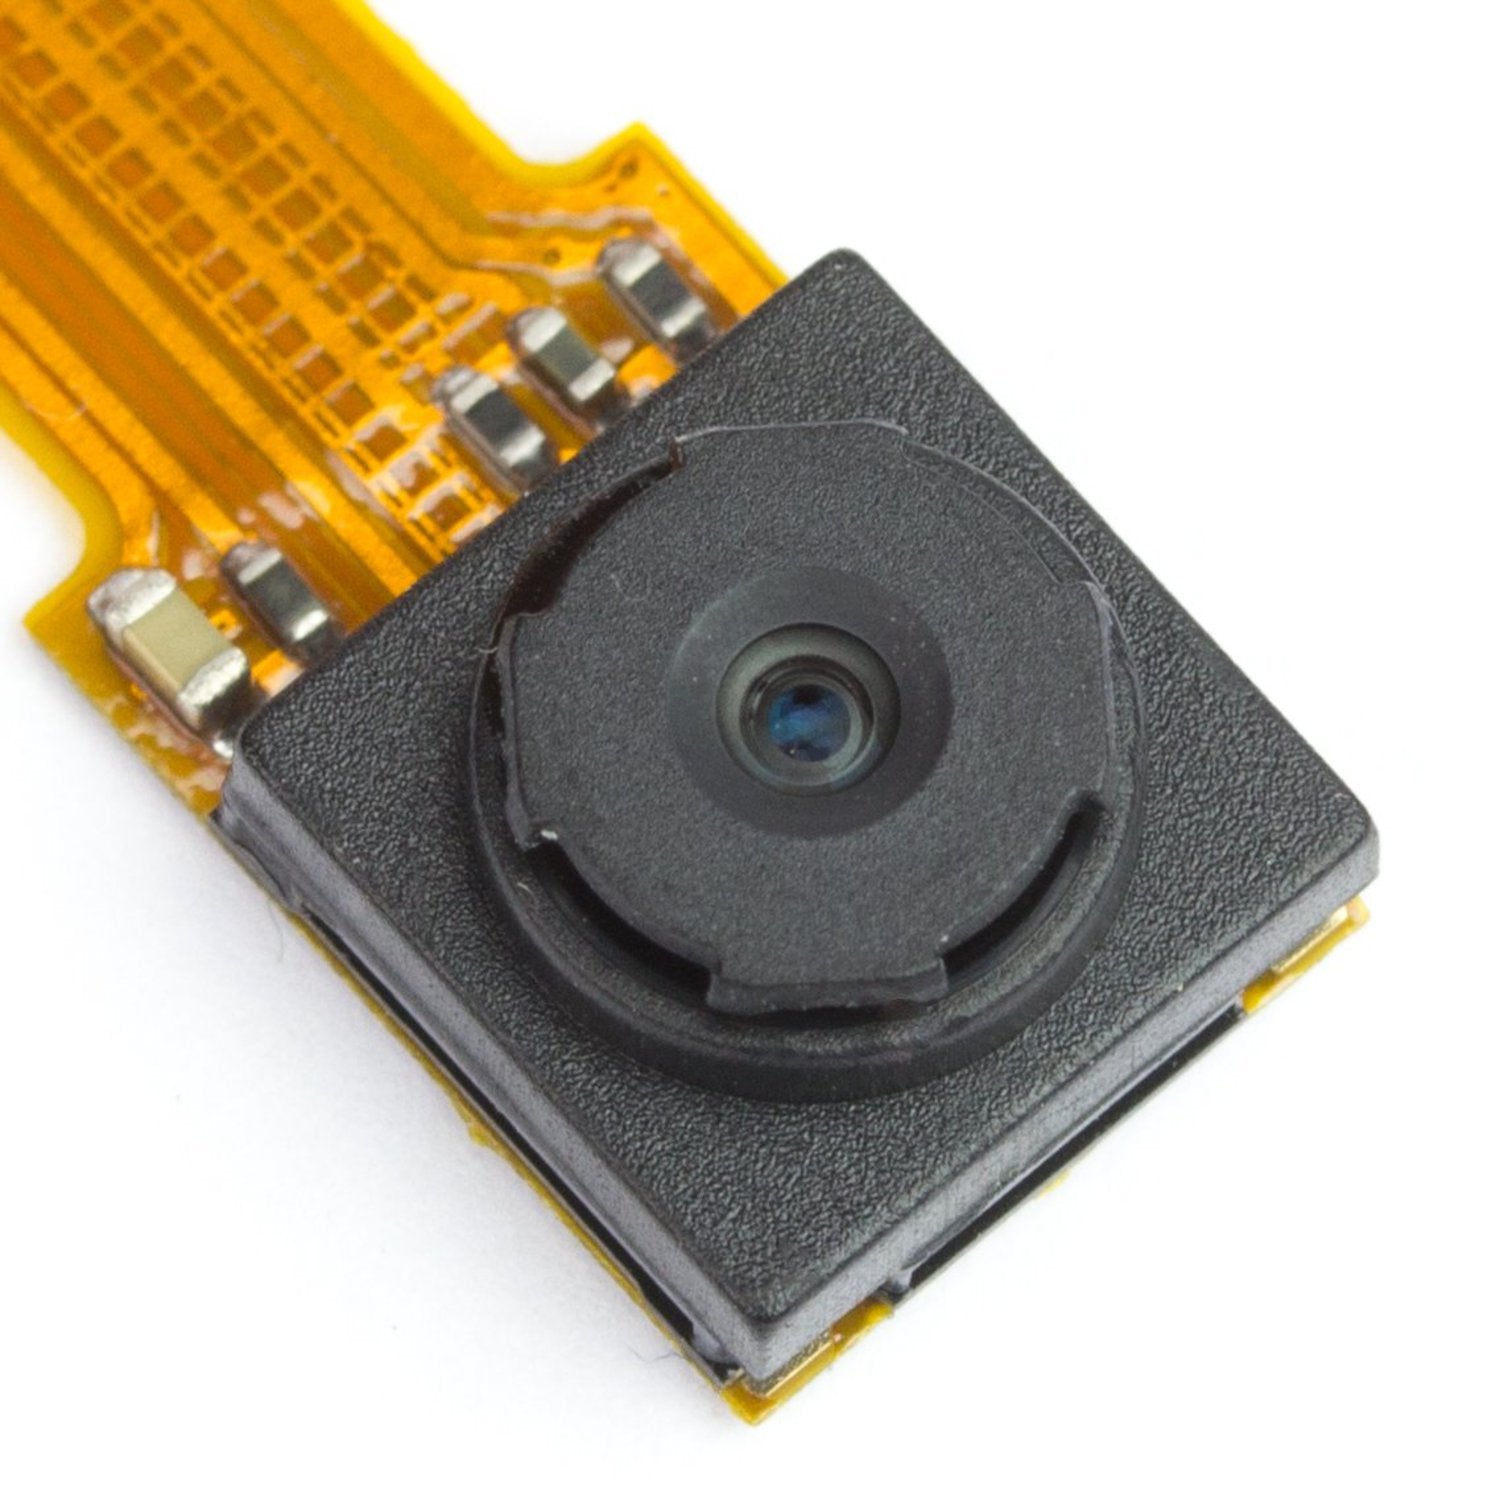 Camera Module for Raspberry Pi Zero - Wide Angle